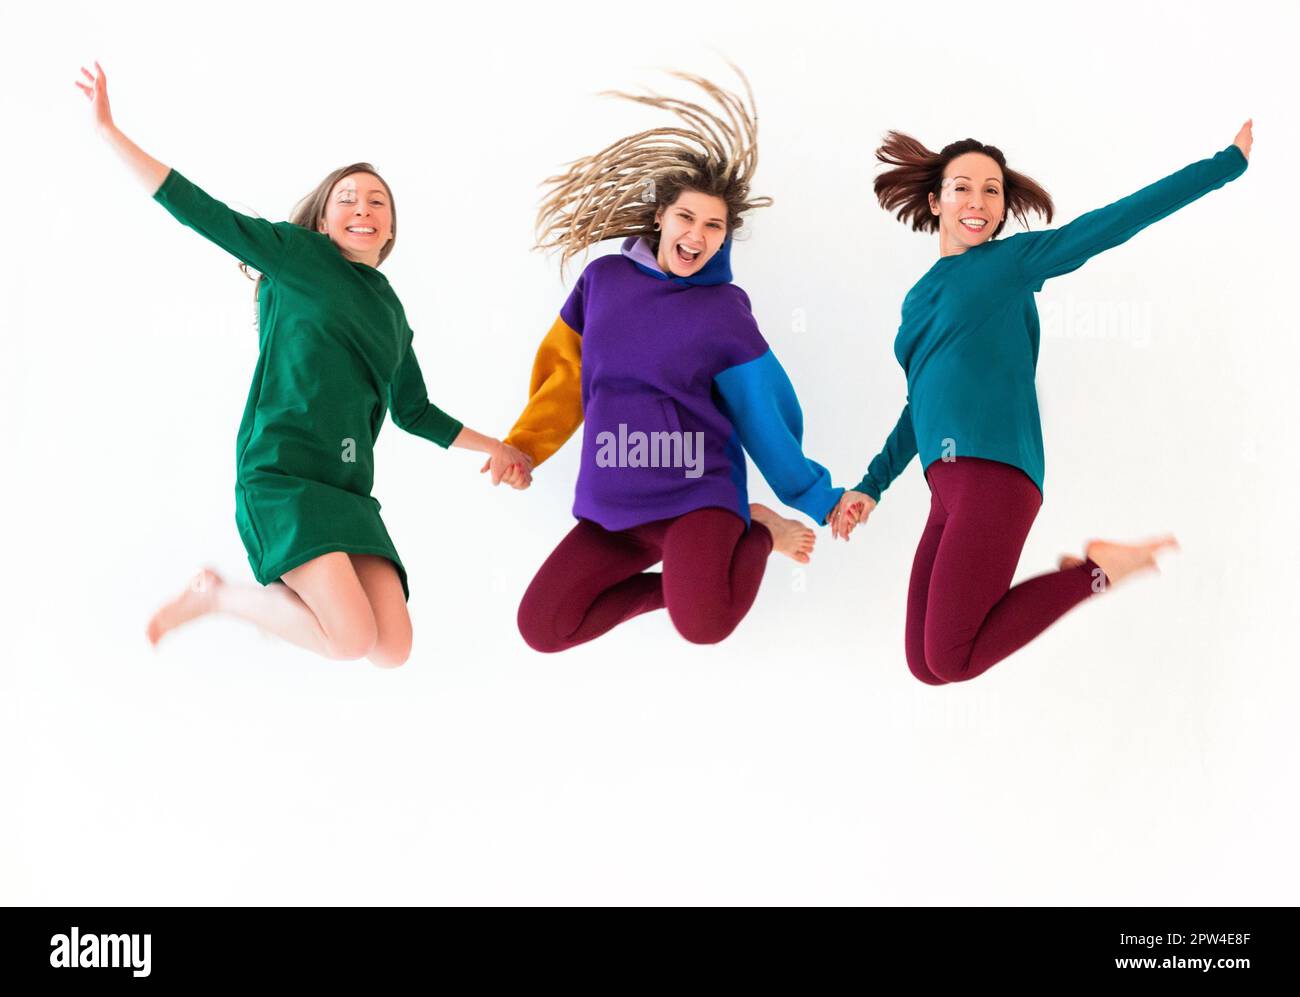 Bild von drei fröhlichen, verspielten Barfußfrauen unterschiedlichen Alters, die sich an den Händen halten, springen und Spaß haben, Urlaub genießen, feiern Stockfoto